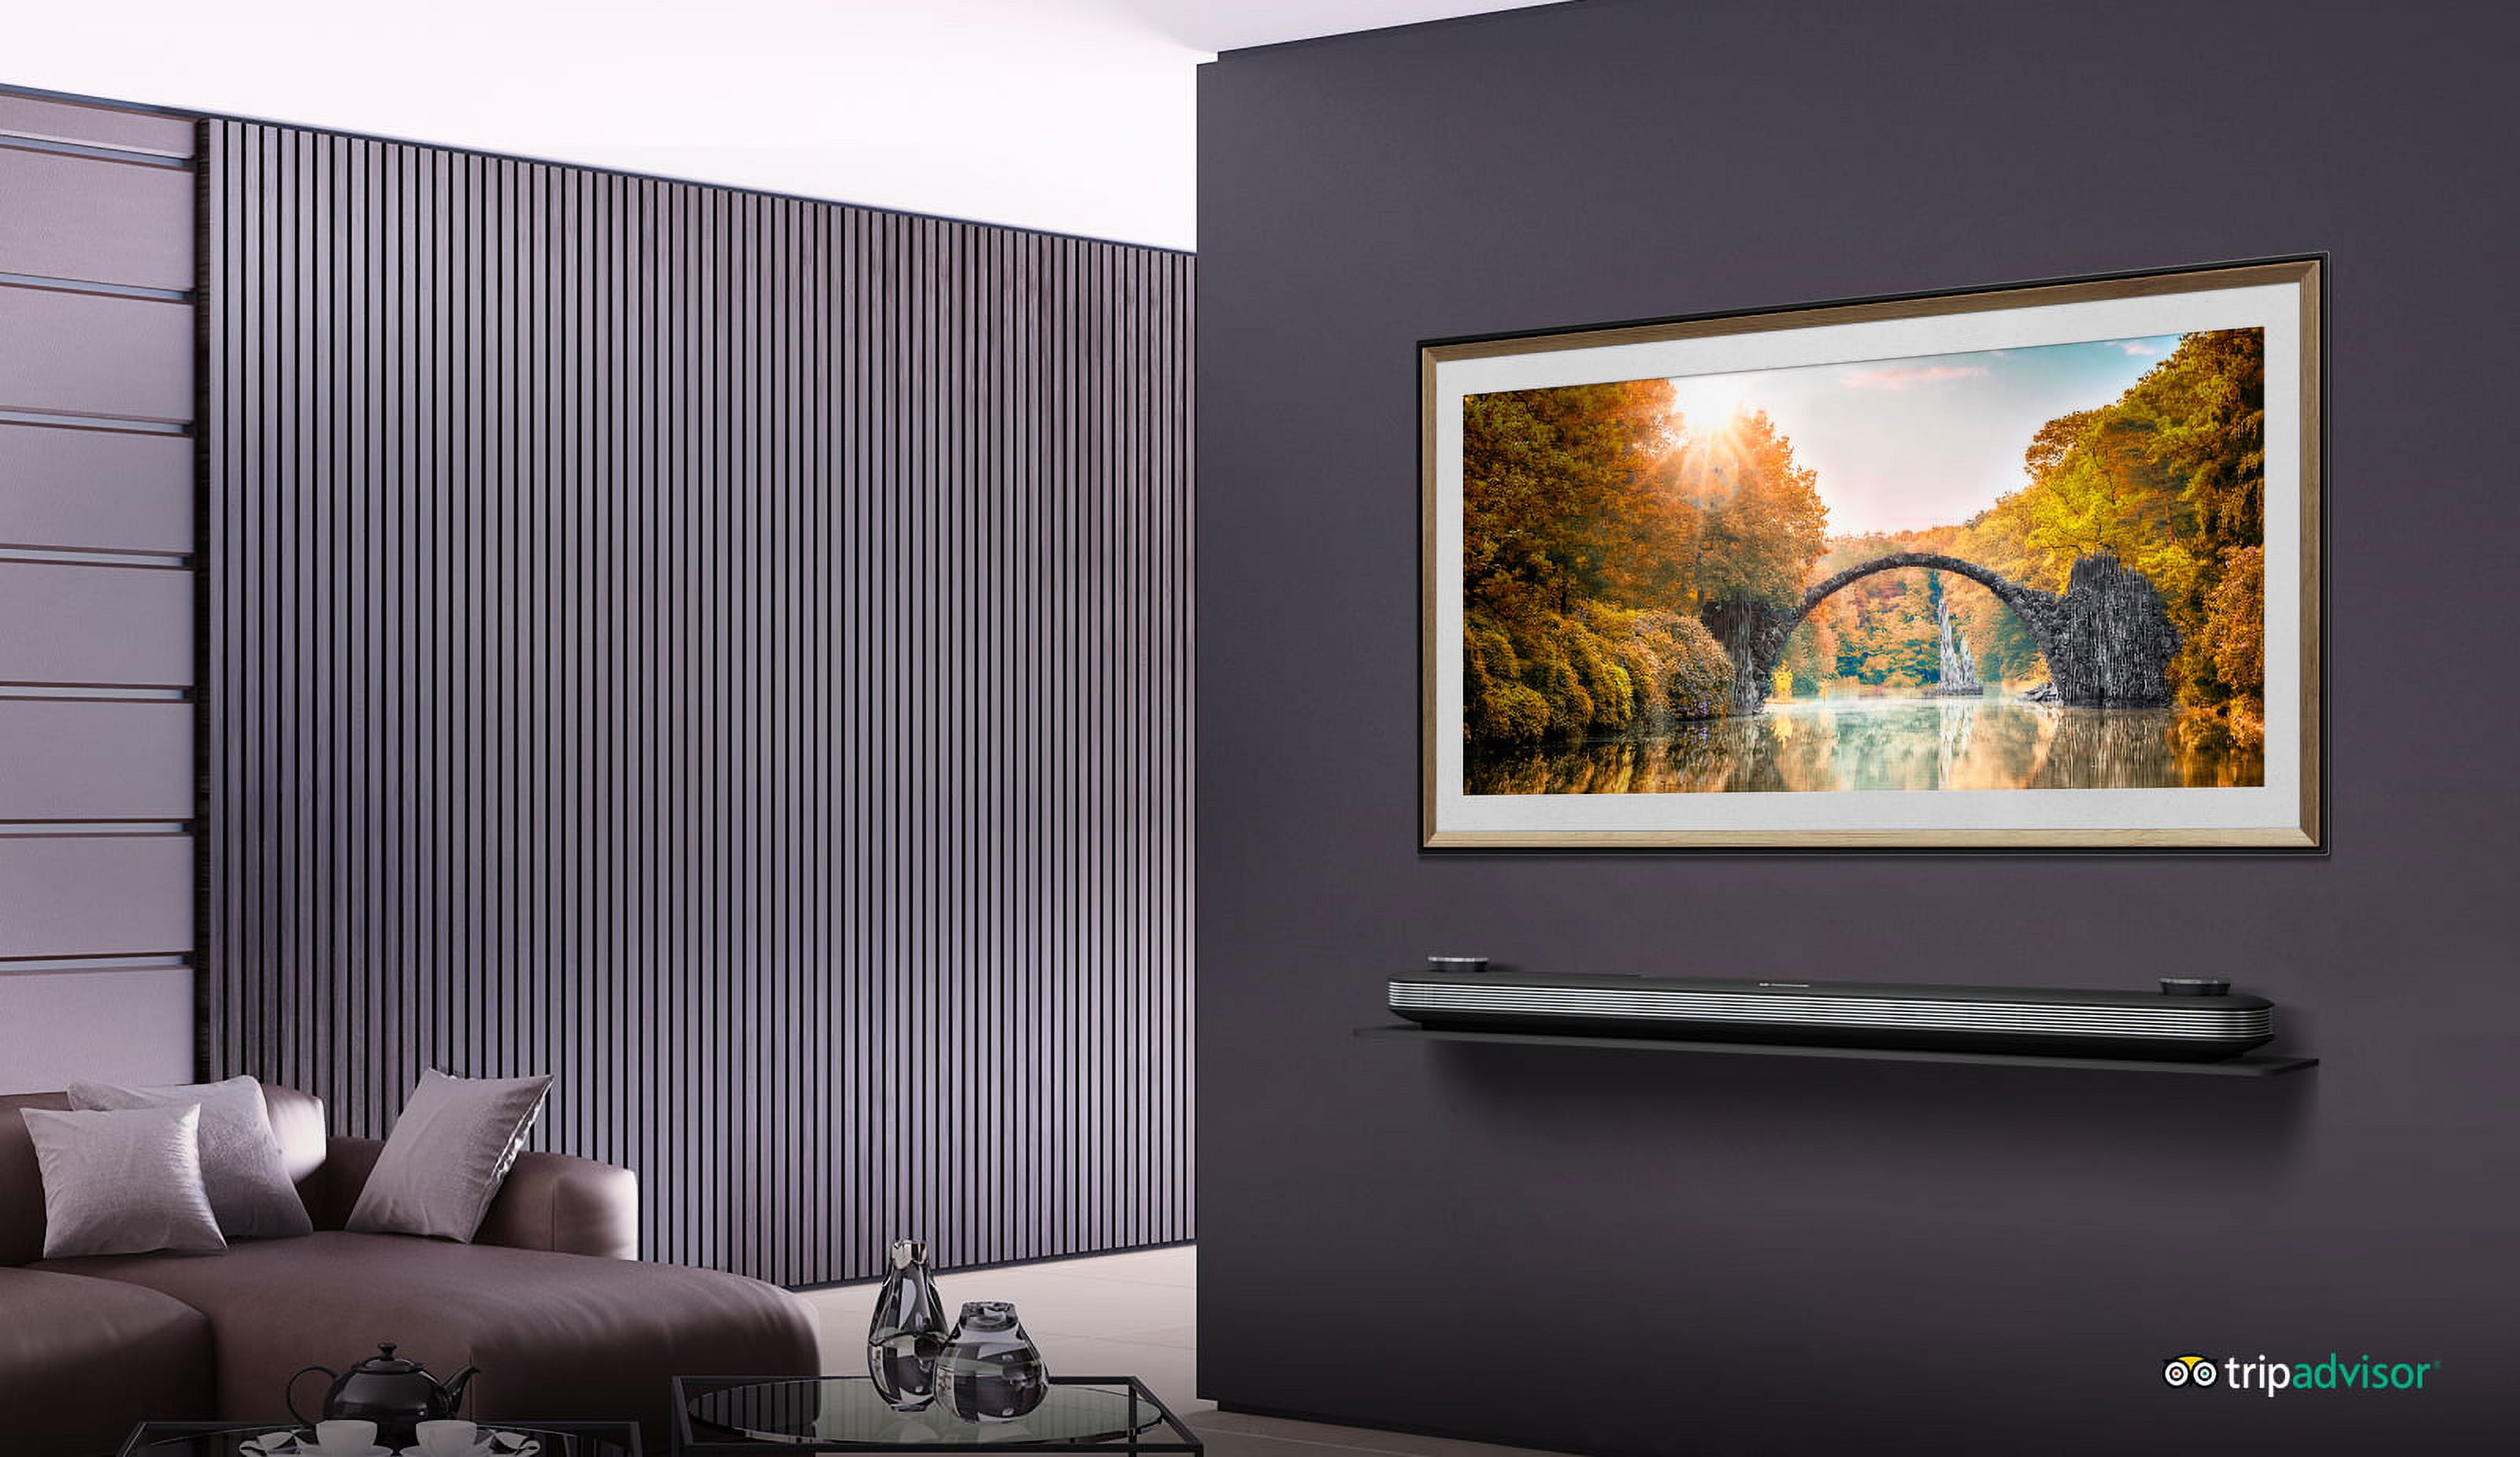 LG 65" Class OLED W9 Series 4K (2160P) HDR Smart TV w/AI ThinQ - OLED65W9PUA 2019 Model - image 3 of 14